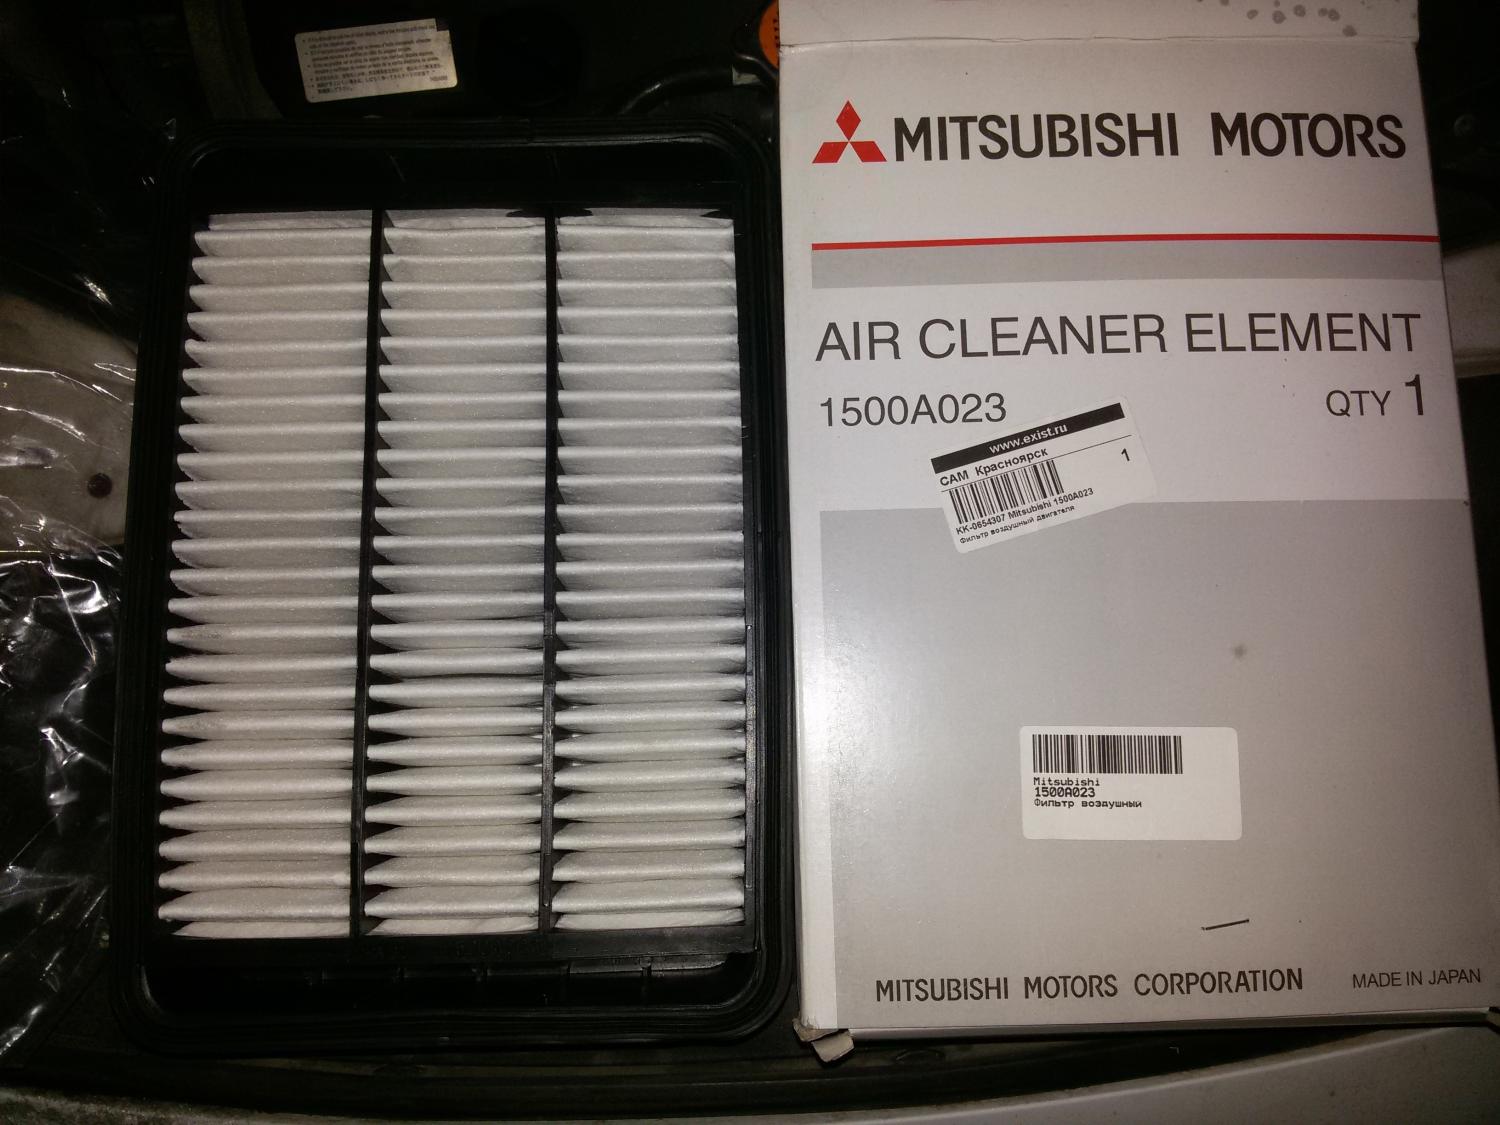 Воздушный фильтр митсубиси аутлендер 3. 1500a023 фильтр воздушный Mitsubishi. Фильтр воздушный 1500a608 Mitsubishi. Воздушный фильтр Mitsubishi Outlander 3. Mitsubishi 1500a023.